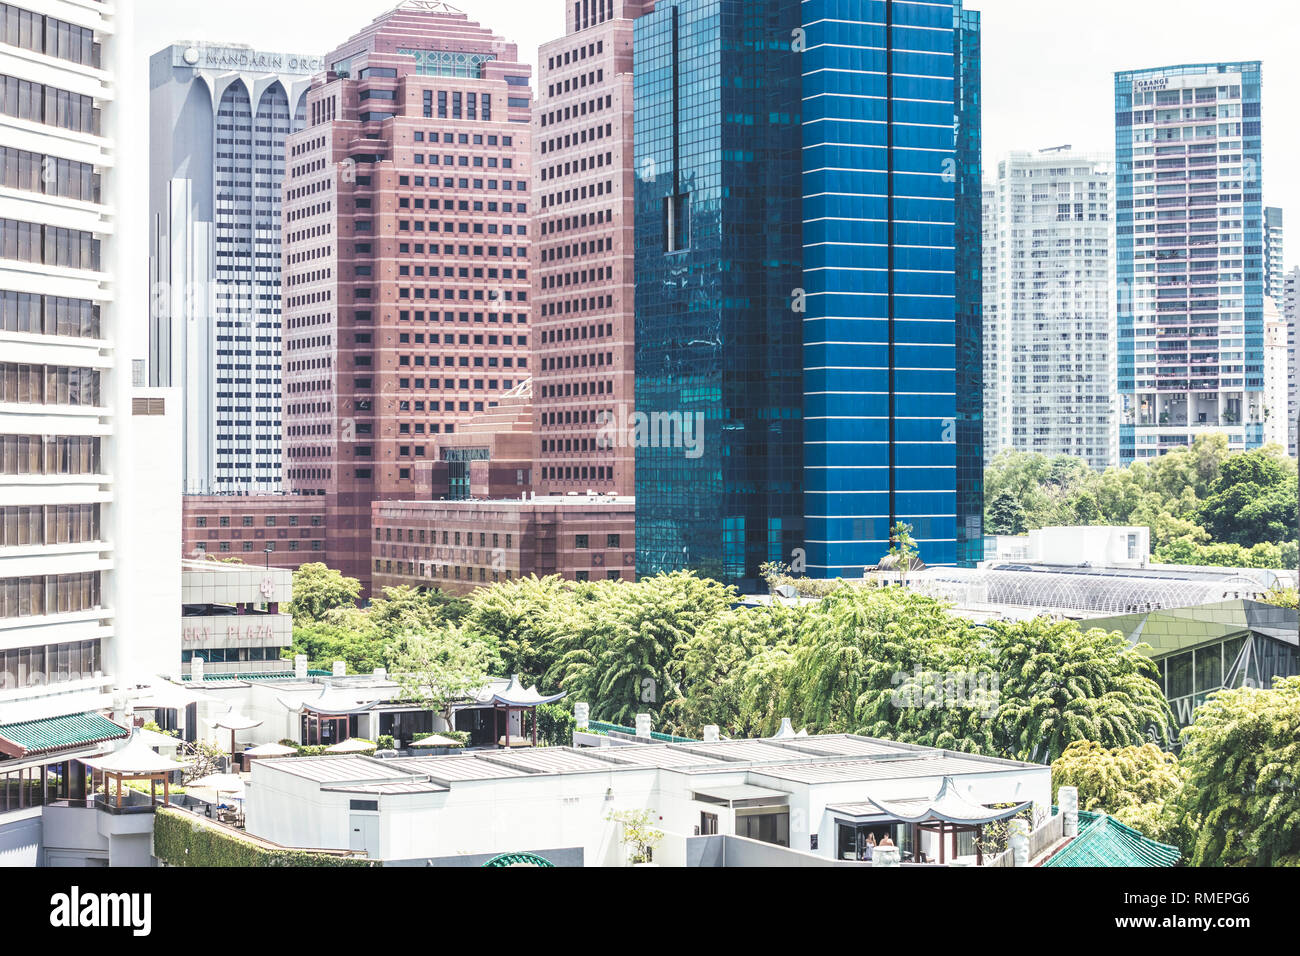 Singapur/Singapur - 10. Februar 2019: Antenne, in der Nähe der Orchard Road Wisma Atria und Ngee Ann City street während des Tages Stockfoto